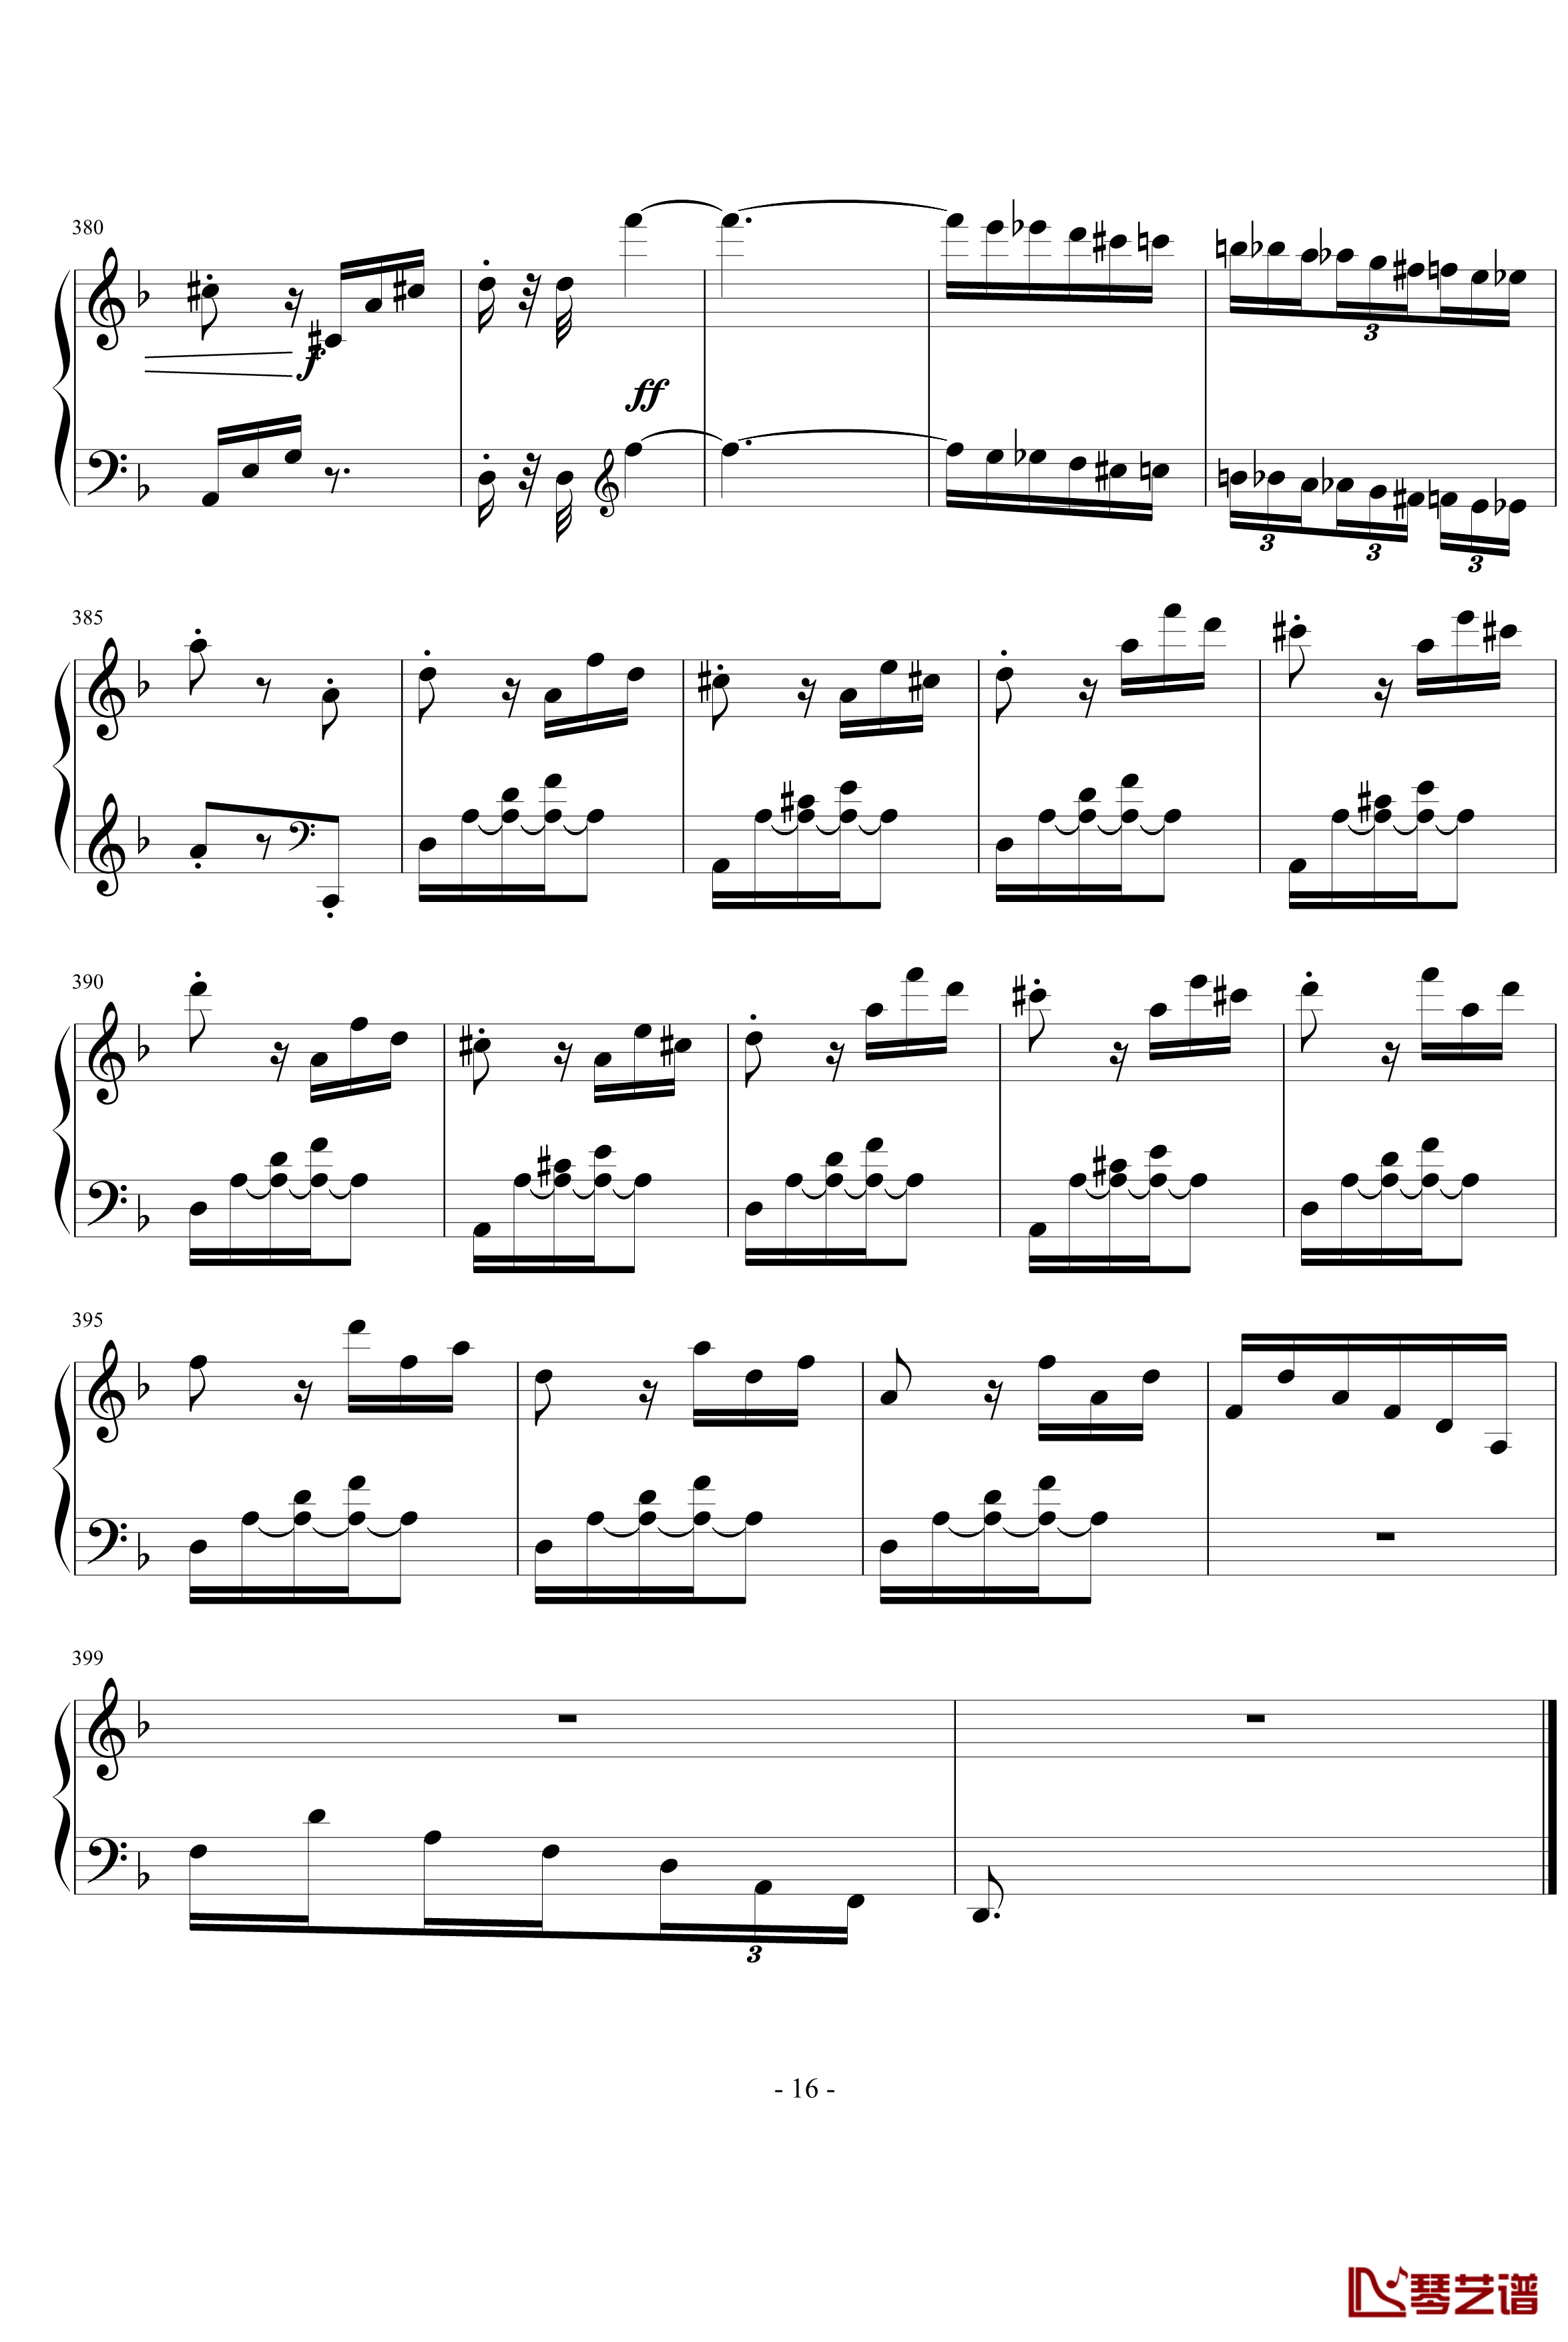 暴风雨第三乐章钢琴谱-贝多芬-beethoven16